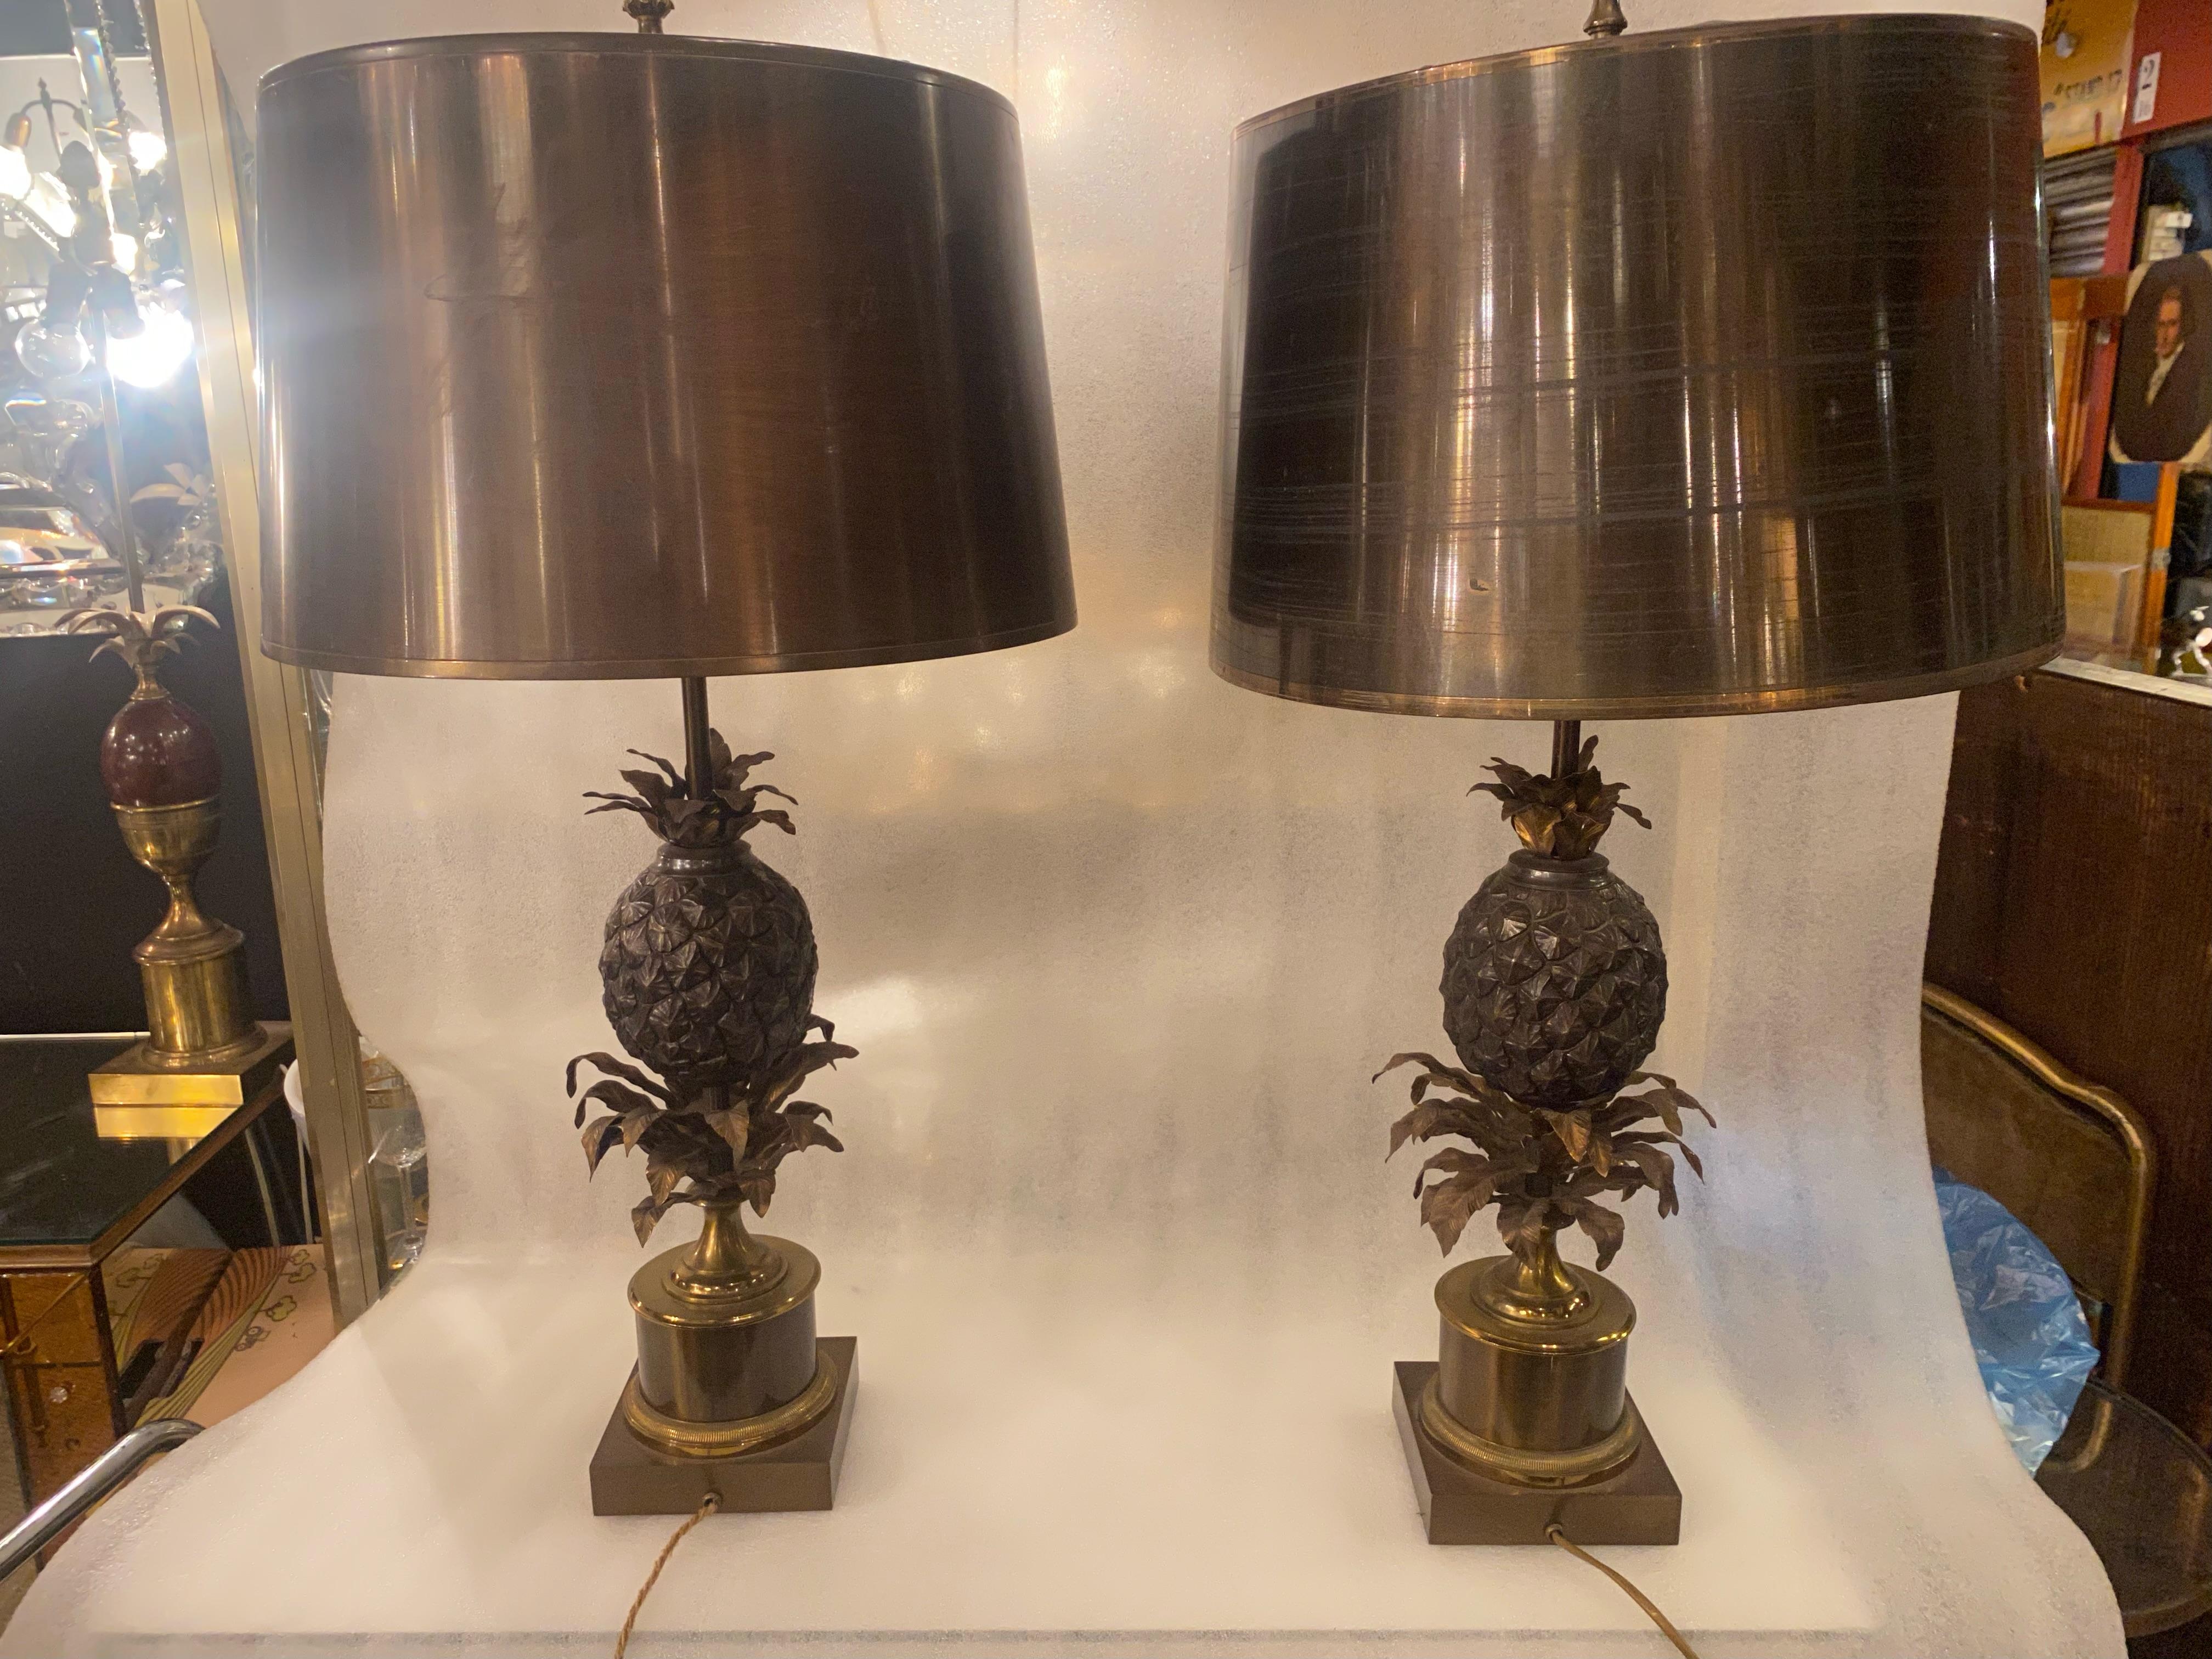 Paire de lampes ananas ou similaires signées Charles & Fils, fabriquées en France, structure en bronze, abat-jour en laiton doré et poli sur les bords, bon état, Circa 1950/70
3 ampoules, douilles à baïonnette et à vis
Hauteur : 80cm
Base : 13 x